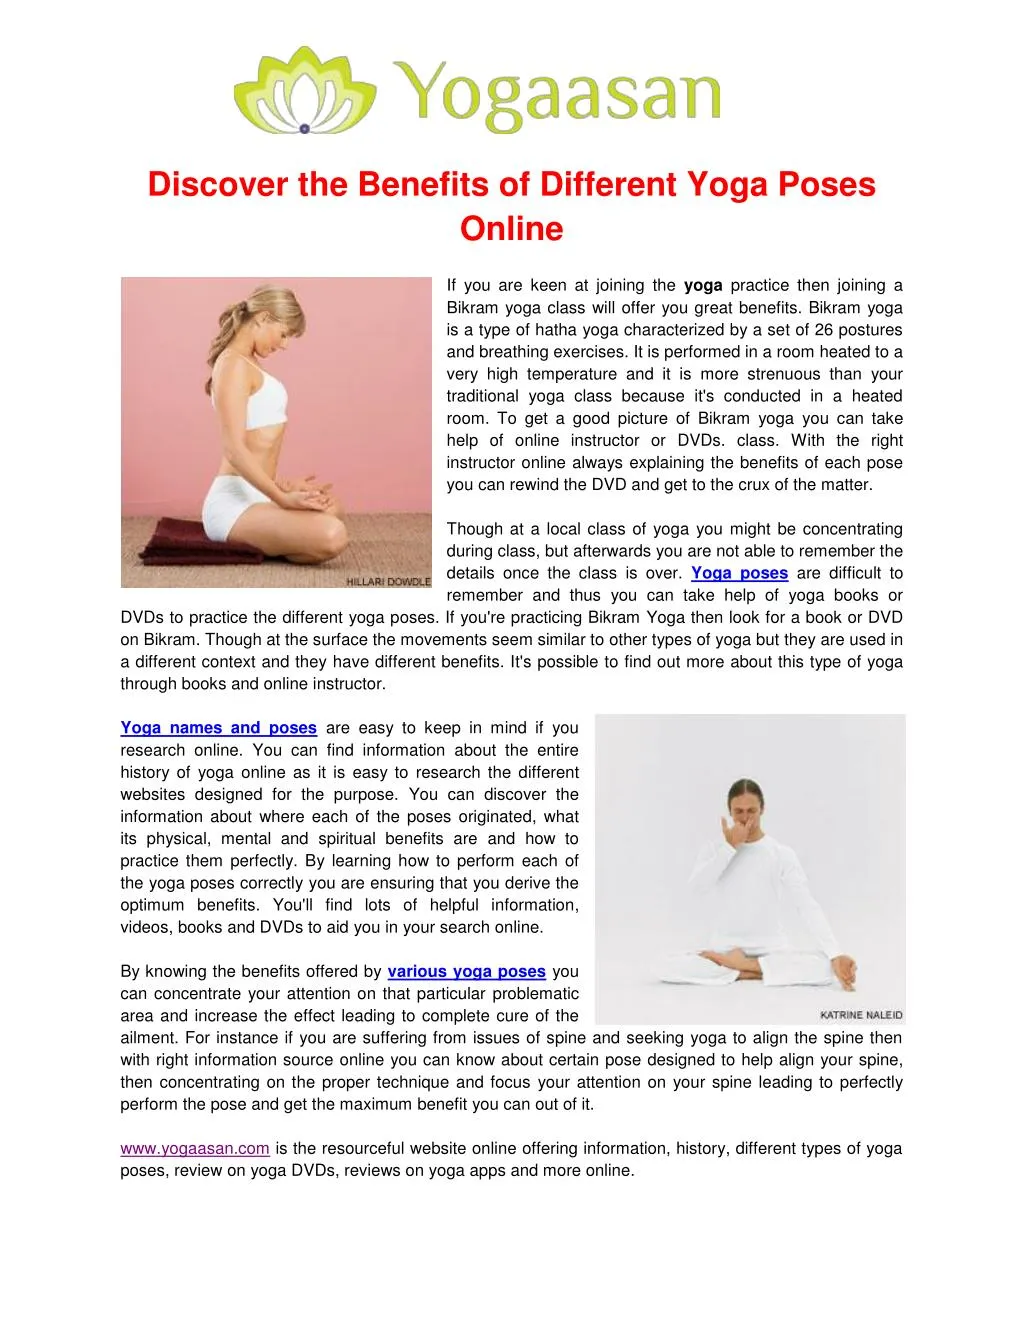 122) Power Yoga - with Adriene -   Power yoga, Yoga with adriene,  Free yoga videos